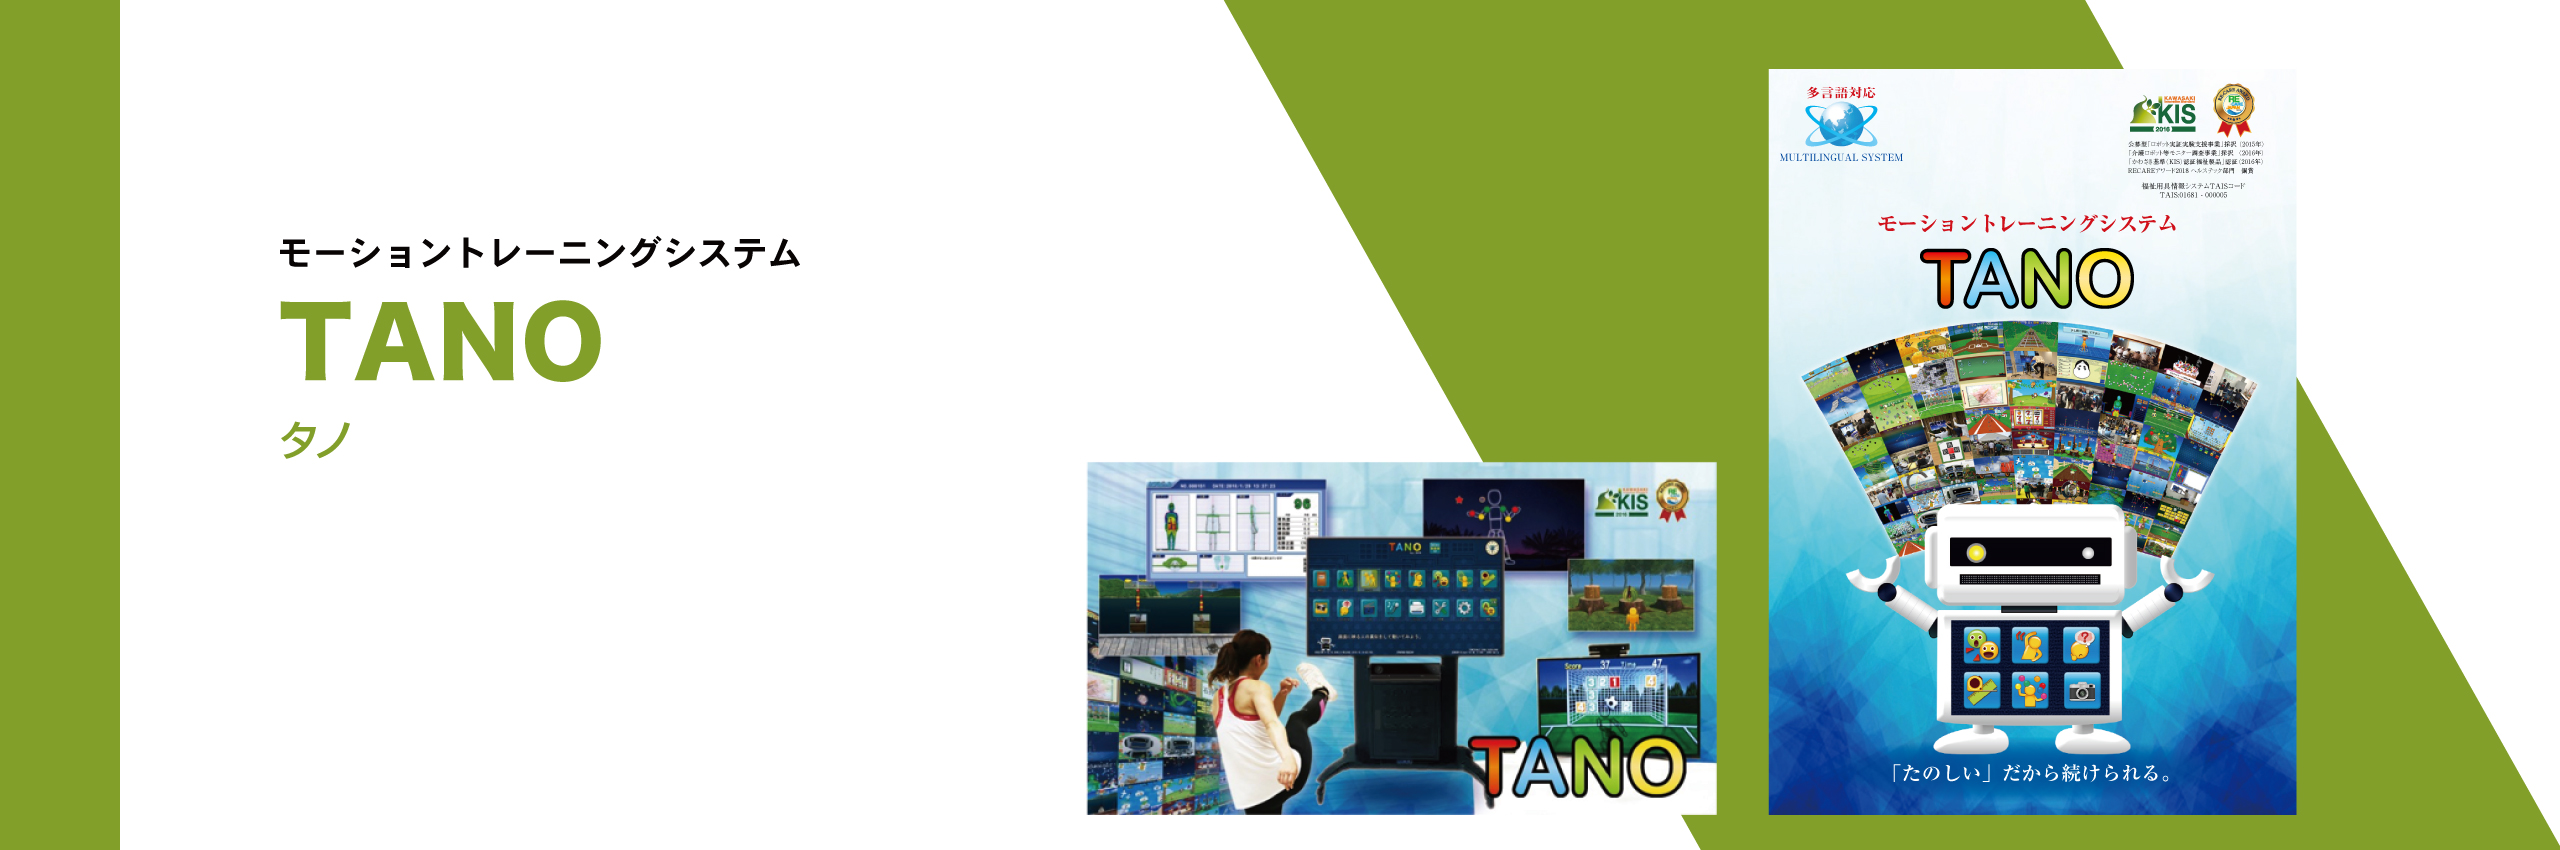 TANO（モーショントレーニングシステム）